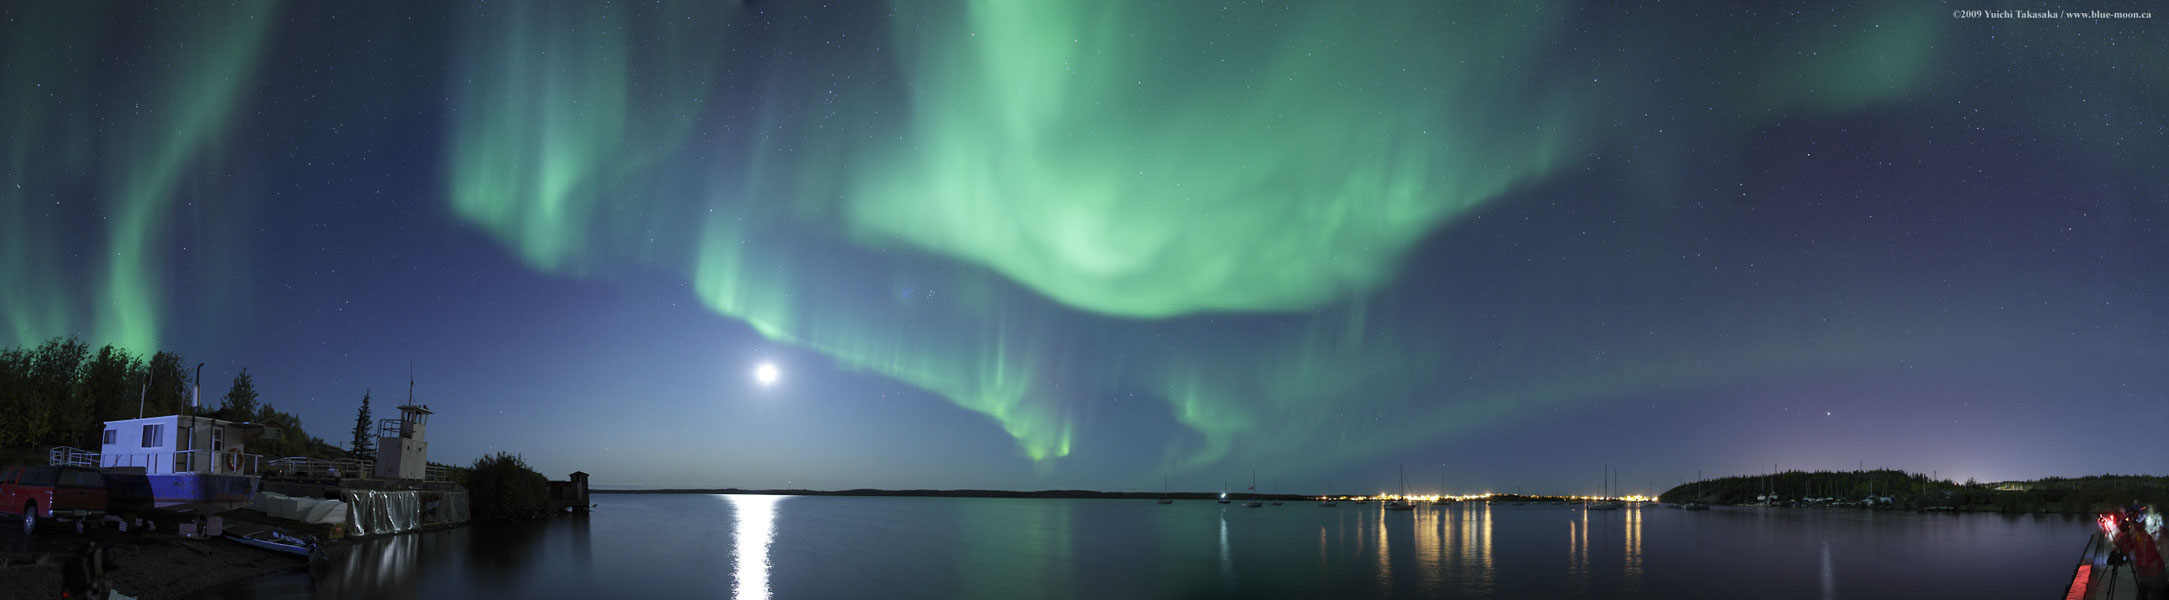 Über einem Horizont eines Gewässers sind grüne Polarlichtschleier über den ganzen Himmel verteilt.